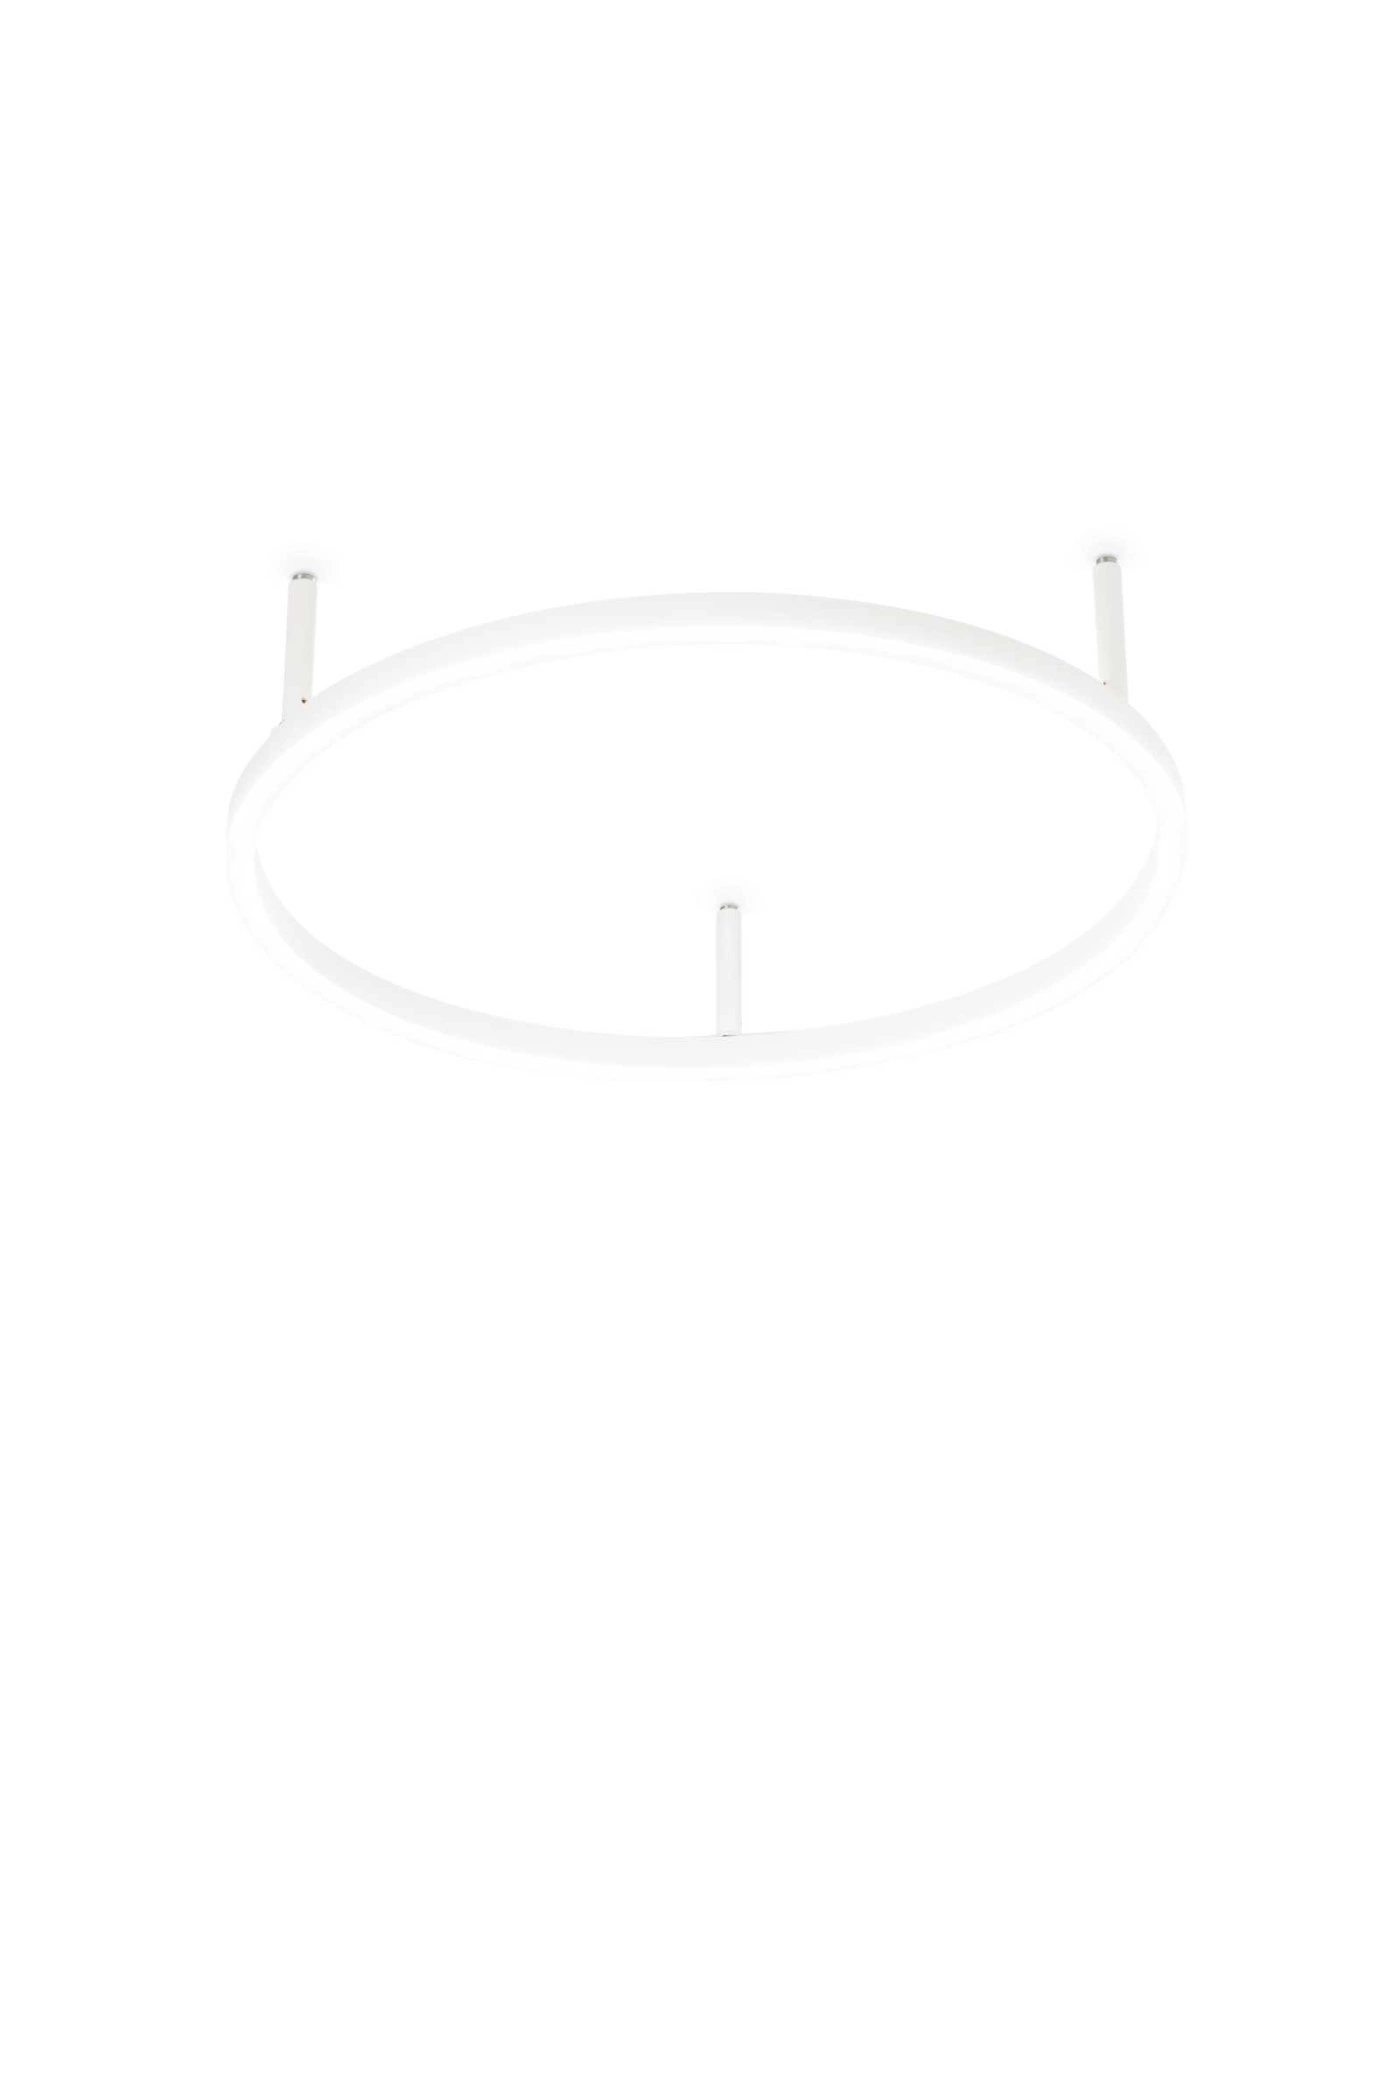   
                        
                        Светильник потолочный IDEAL LUX (Италия) 10351    
                         в стиле Хай-тек.  
                        Тип источника света: встроенный led-модуль, несъемный.                         Форма: Круг.                         Цвета плафонов и подвесок: Белый.                         Материал: Алюминий, Пластик.                          фото 1